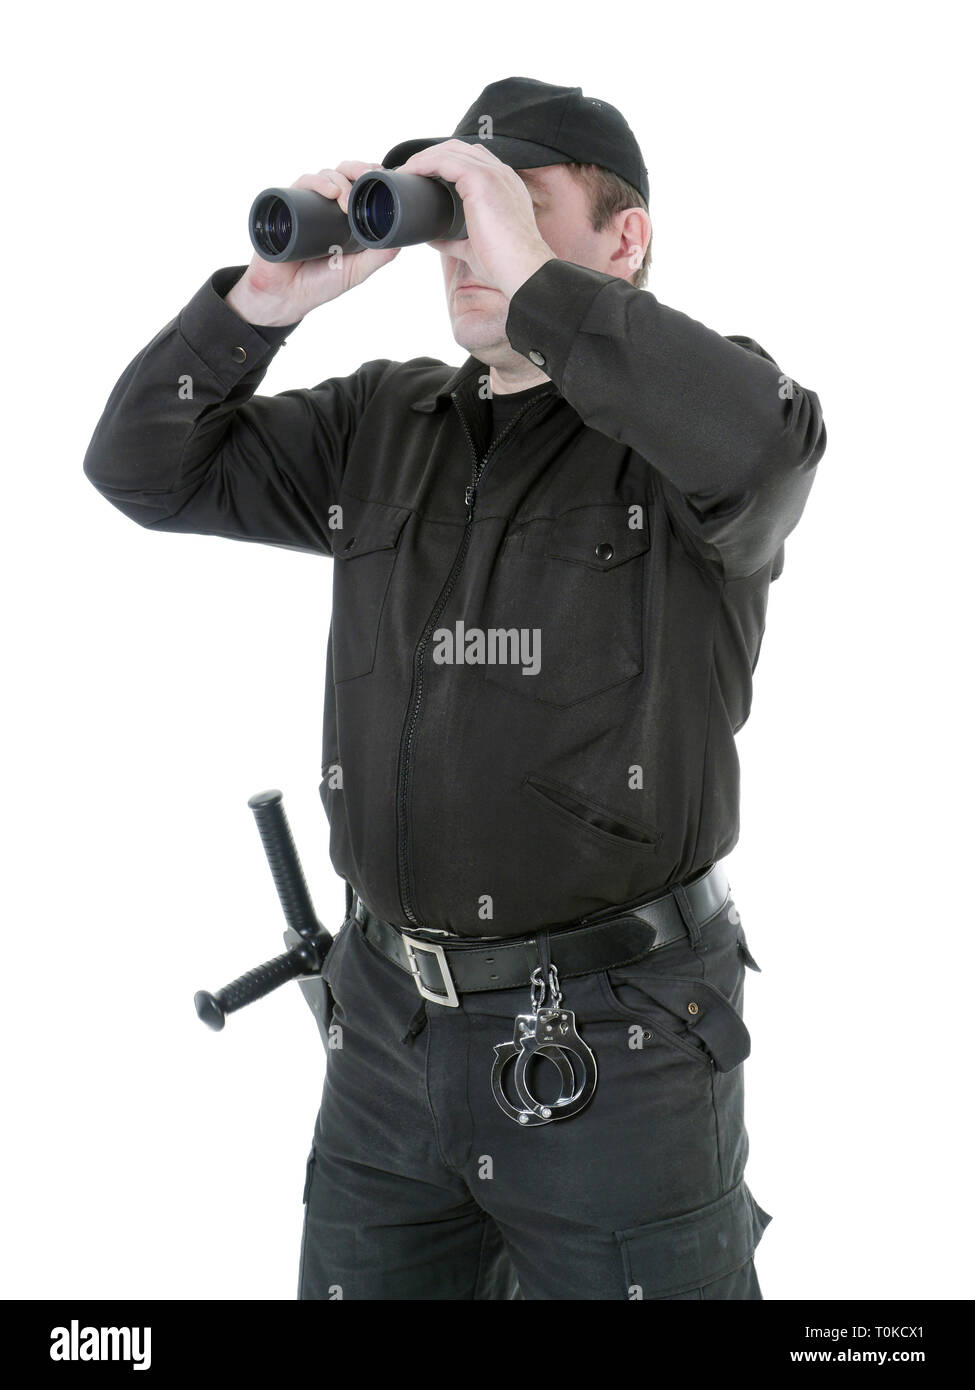 Garde-frontière portant uniforme noir regardant à travers des jumelles, shot on white Banque D'Images